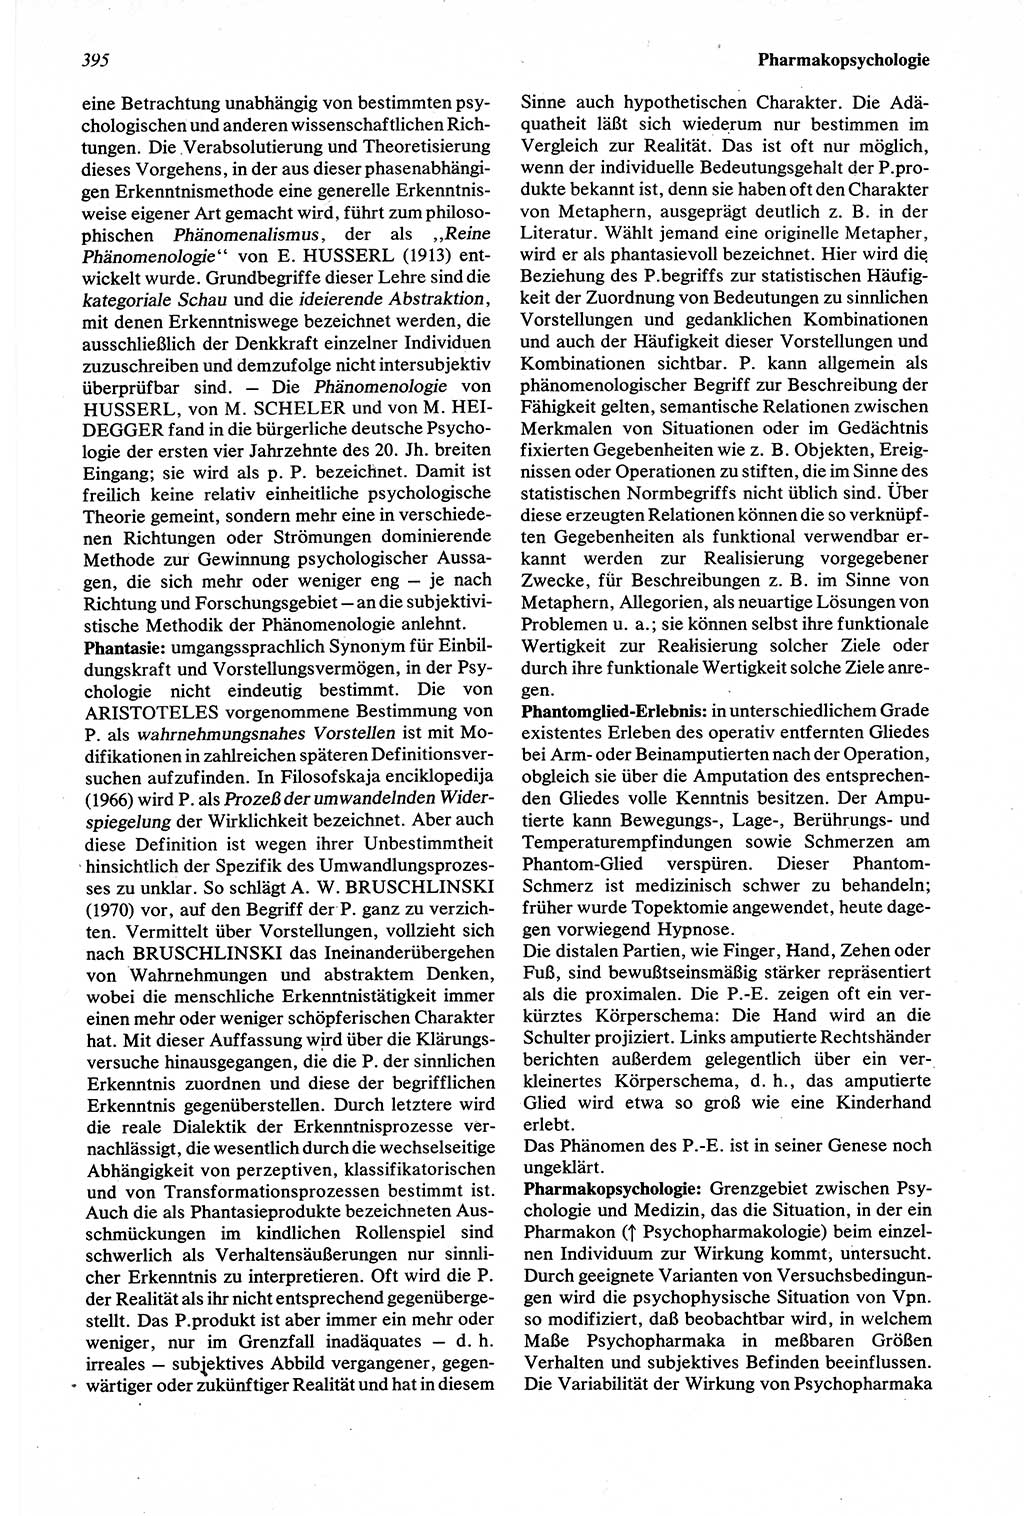 Wörterbuch der Psychologie [Deutsche Demokratische Republik (DDR)] 1976, Seite 395 (Wb. Psych. DDR 1976, S. 395)